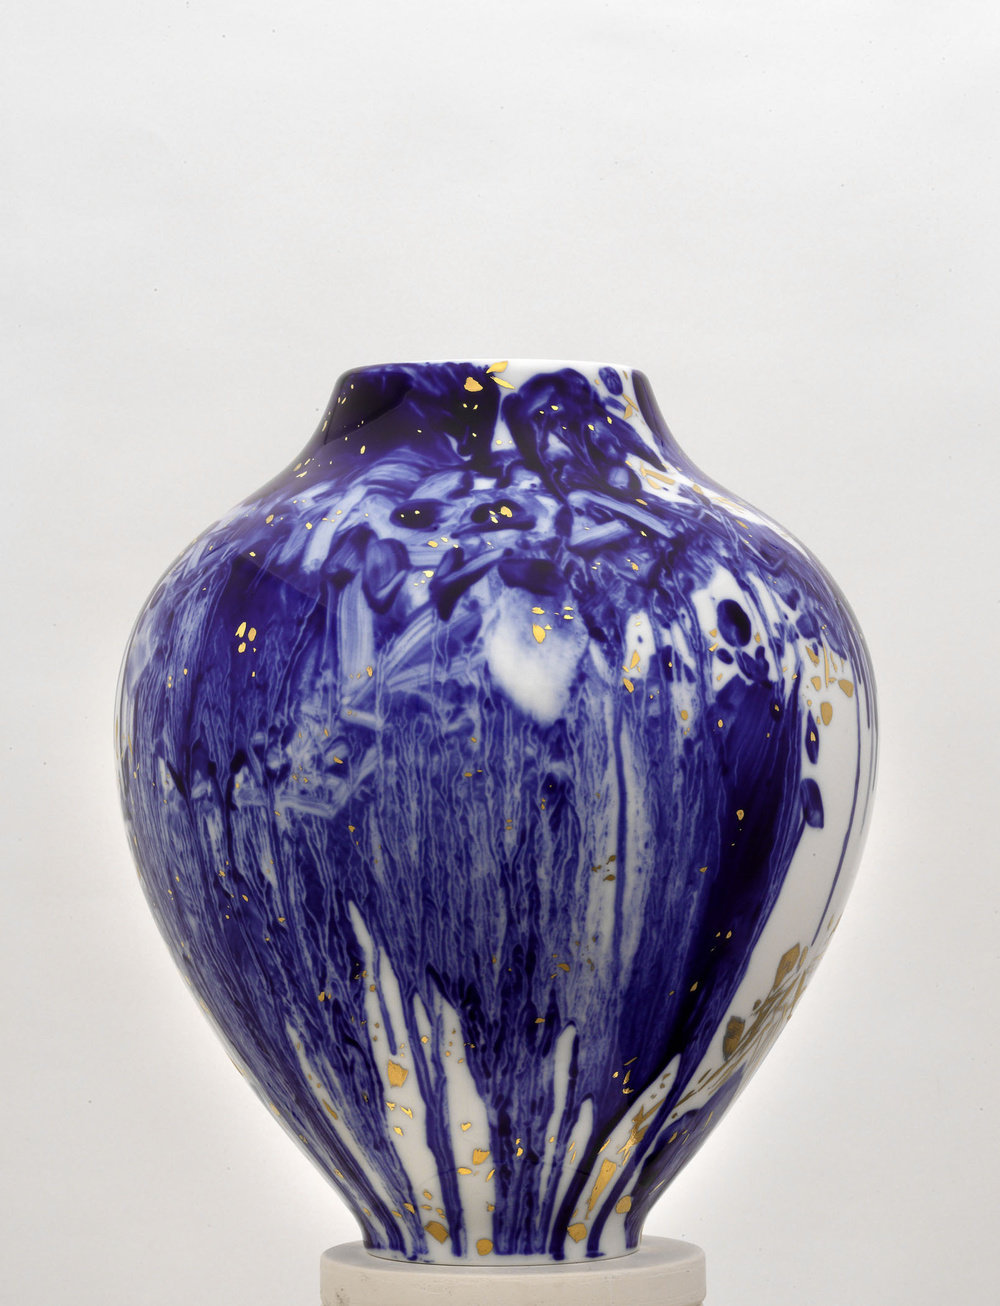 Chu teh chun, de neige, d’or, et d’azur, vase 3, (view 4), 2007 2008, porcelain, h 14 58, d 11 34  in